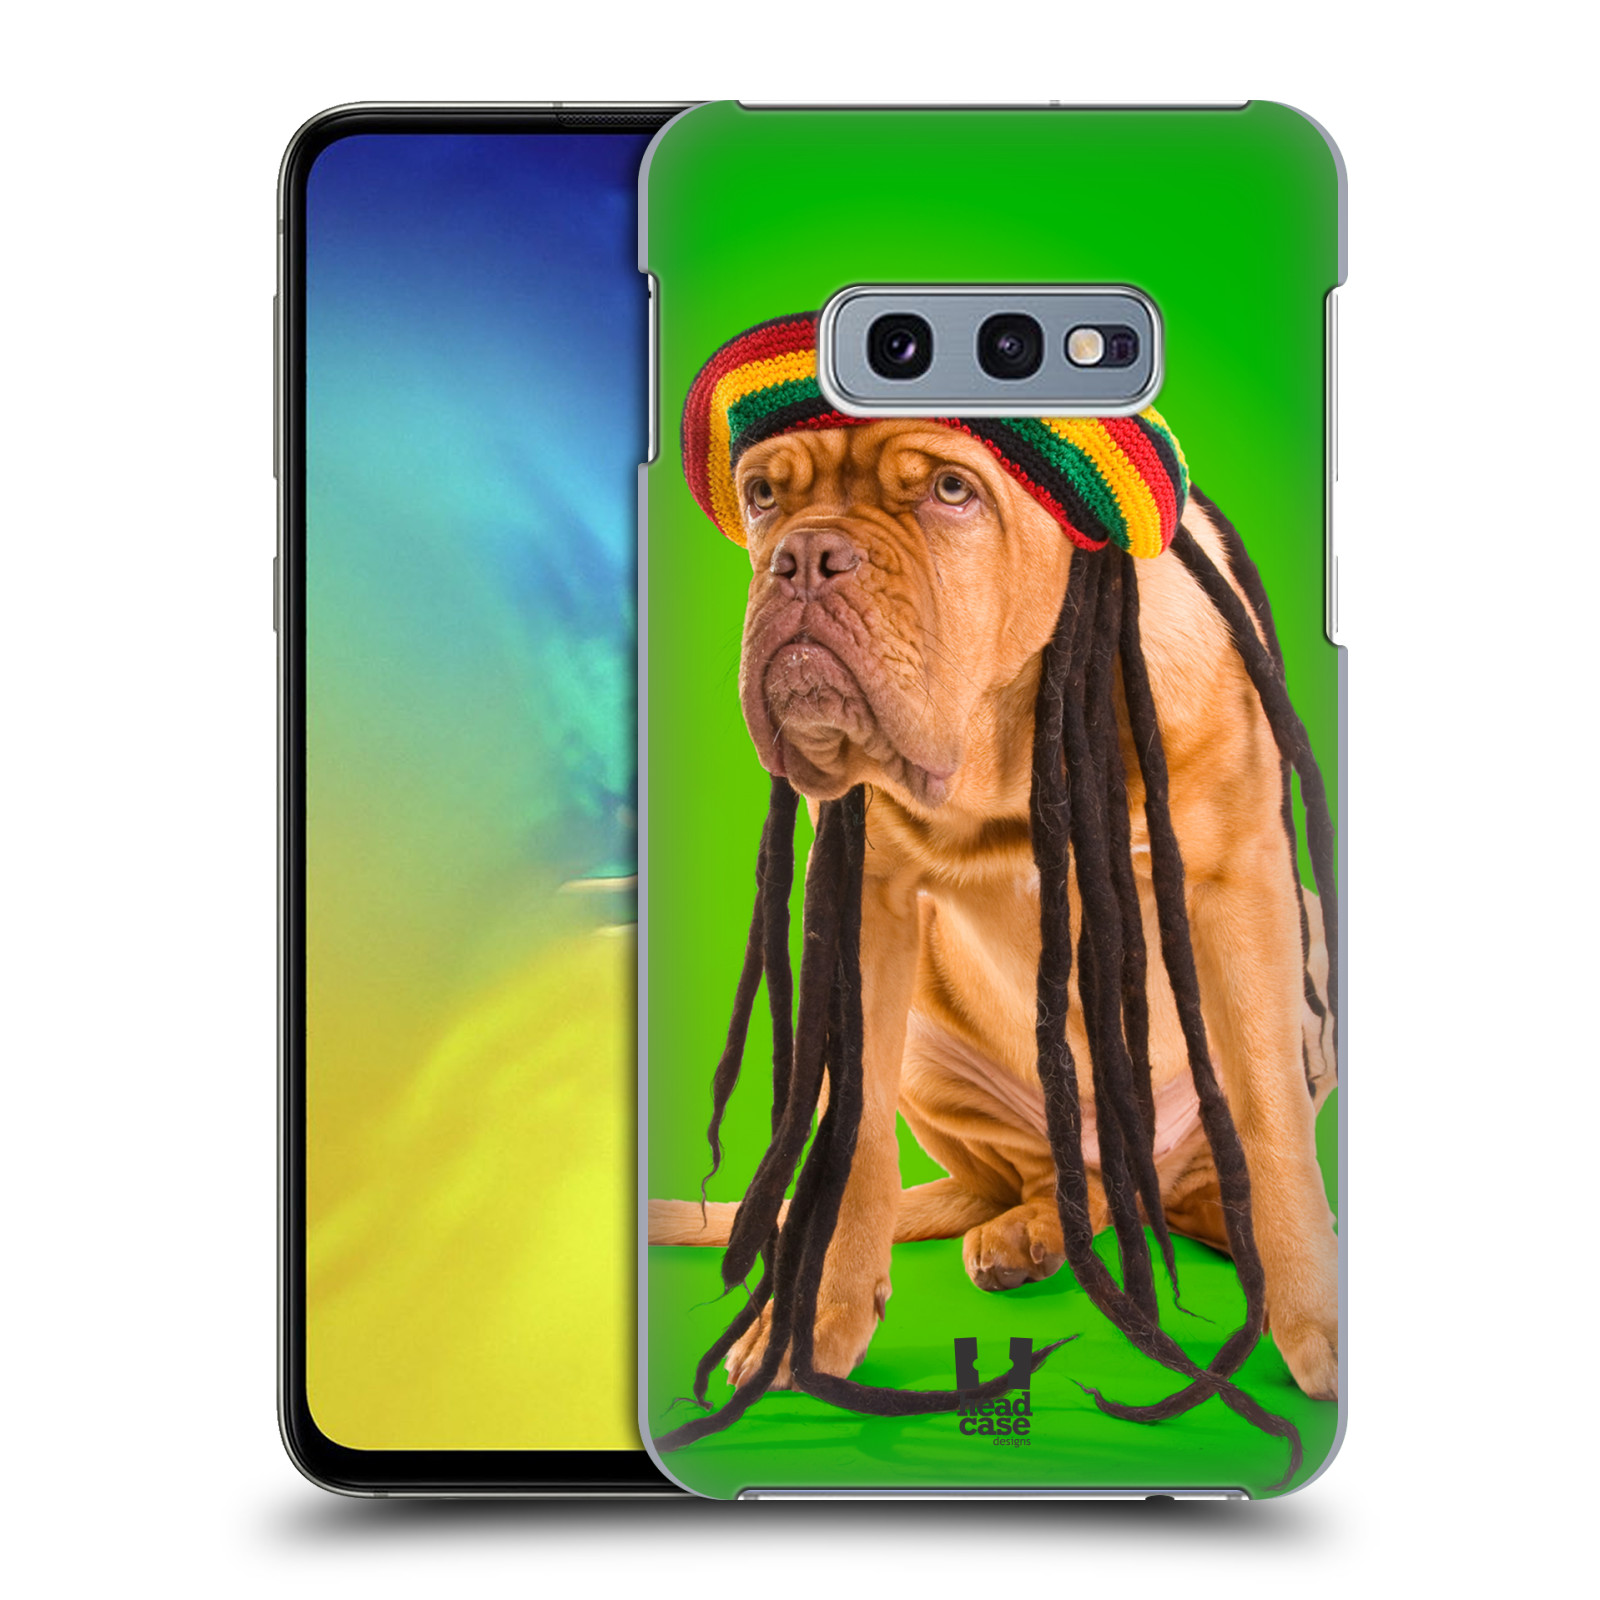 Pouzdro na mobil Samsung Galaxy S10e - HEAD CASE - vzor Legrační zvířátka pejsek dredy Rastafarián